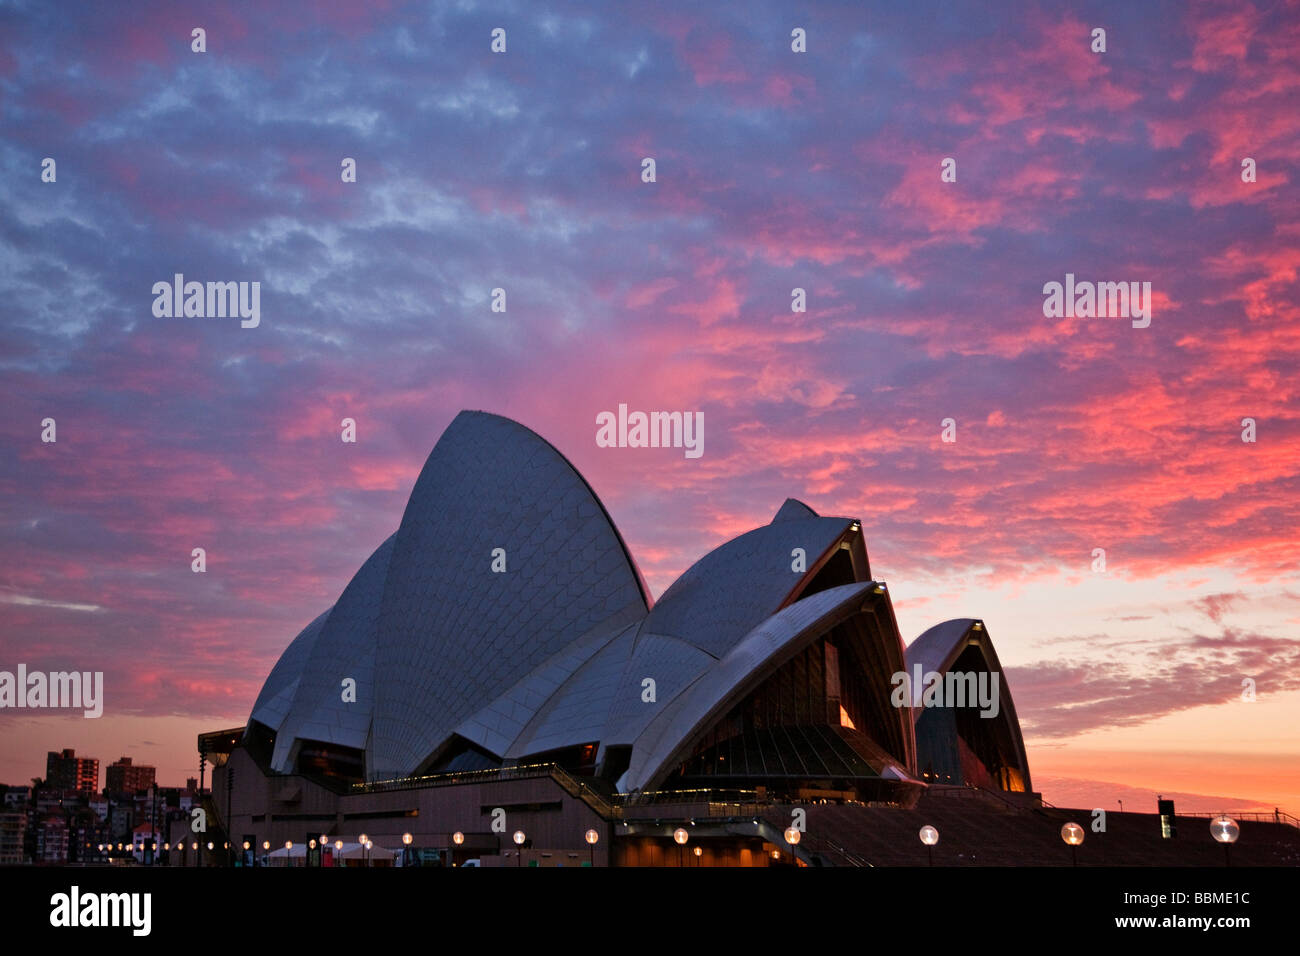 Australia New South Wales. The iconic Sydney Opera House at sunrise. Stock Photo